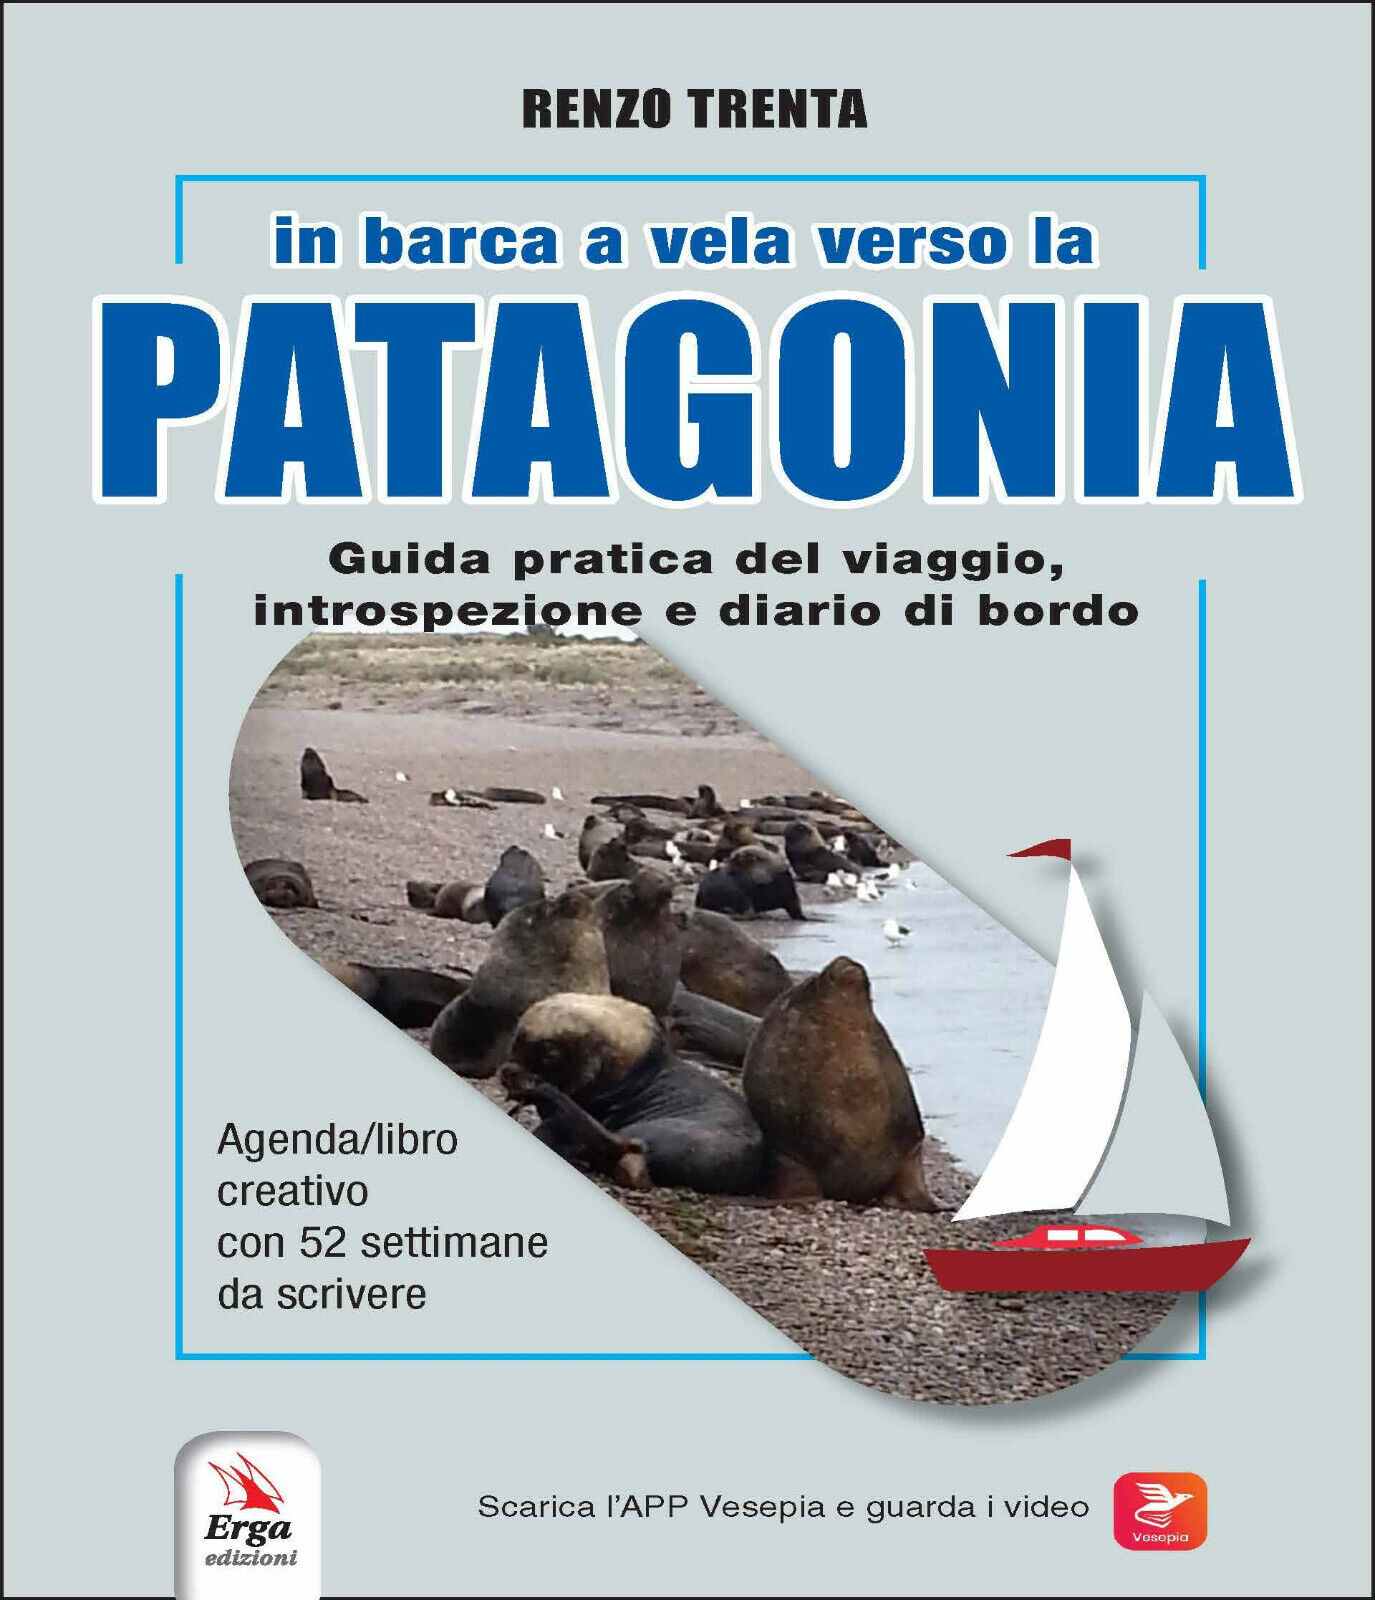 In barca a vela verso la Patagonia - Renzo Trenta - Renzo Trenta - ERGA, 2022